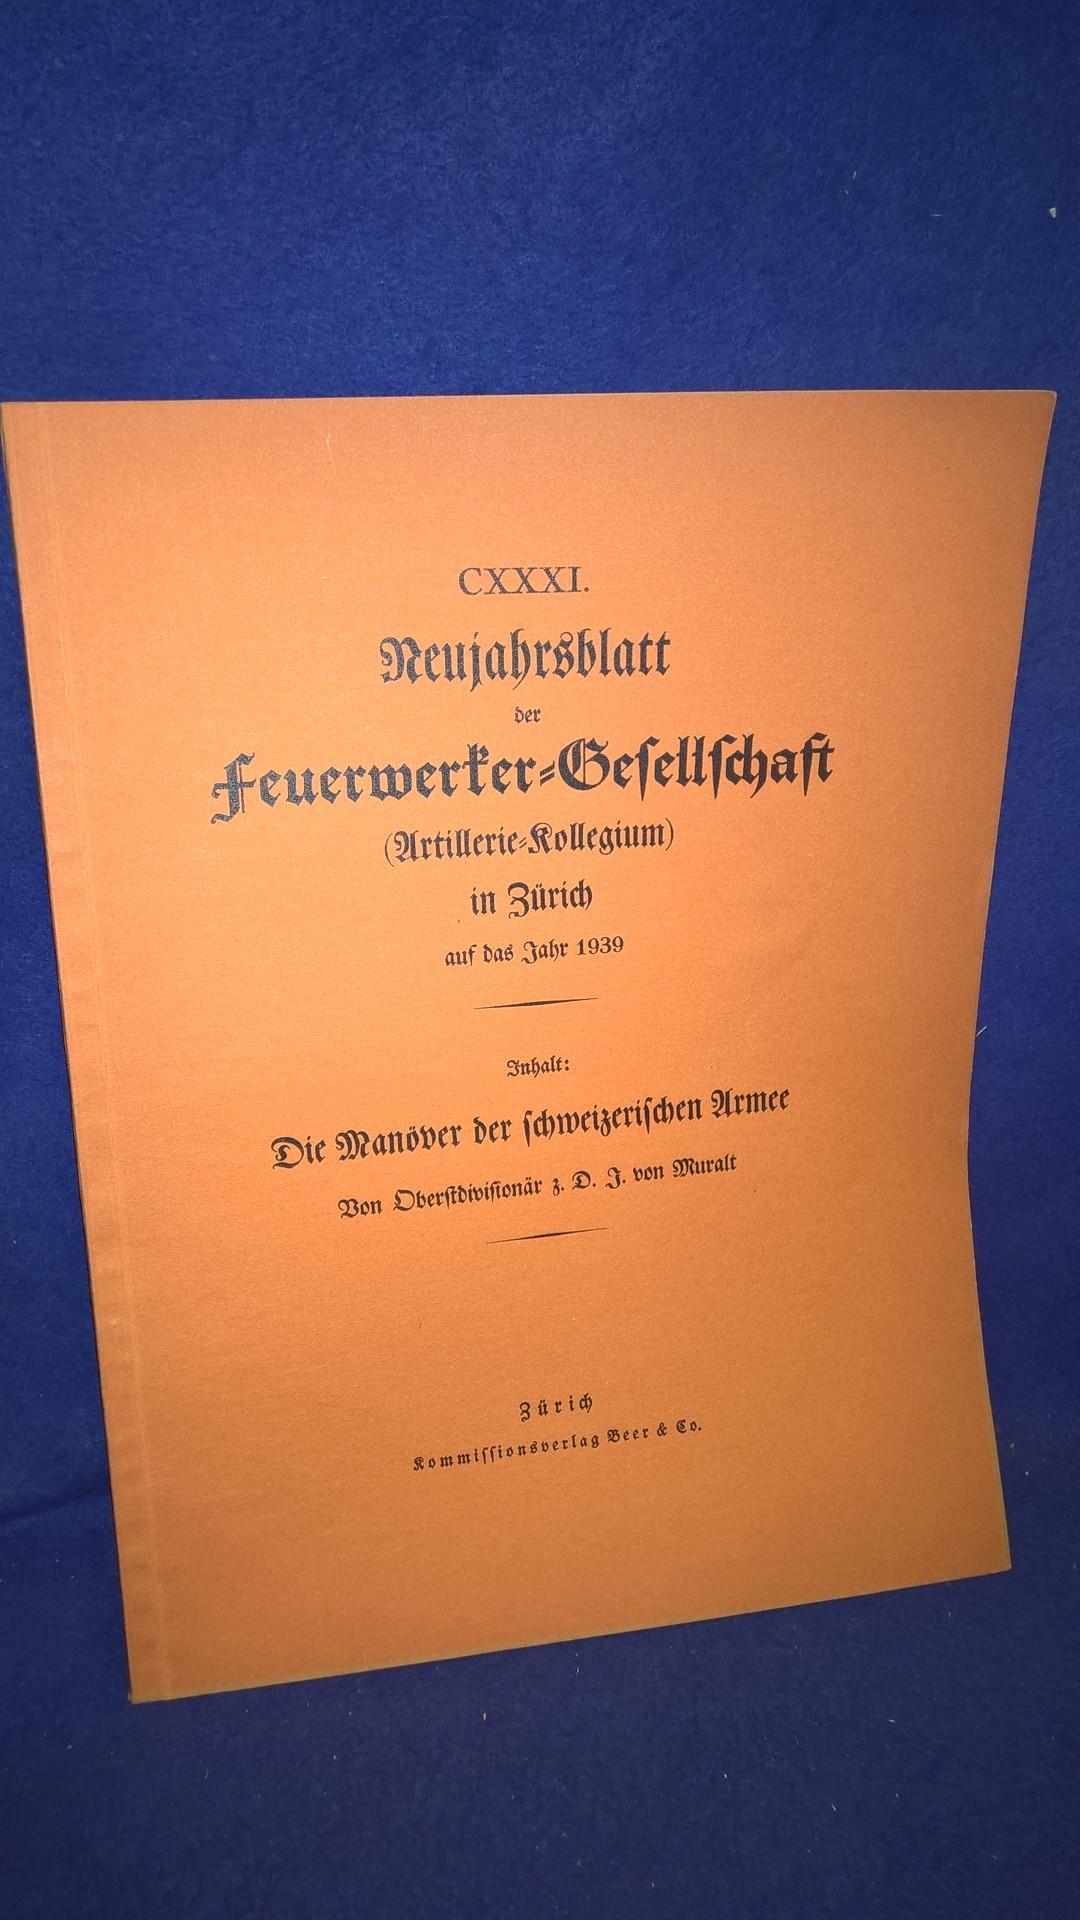 Die Manöver der schweizerischen Armee. Aus der Reihe: Neujahrsblatt der Feuerwerker-Gesellschaft ( Artillerie-Kollegium ) in Zürich auf das Jahr 1939.